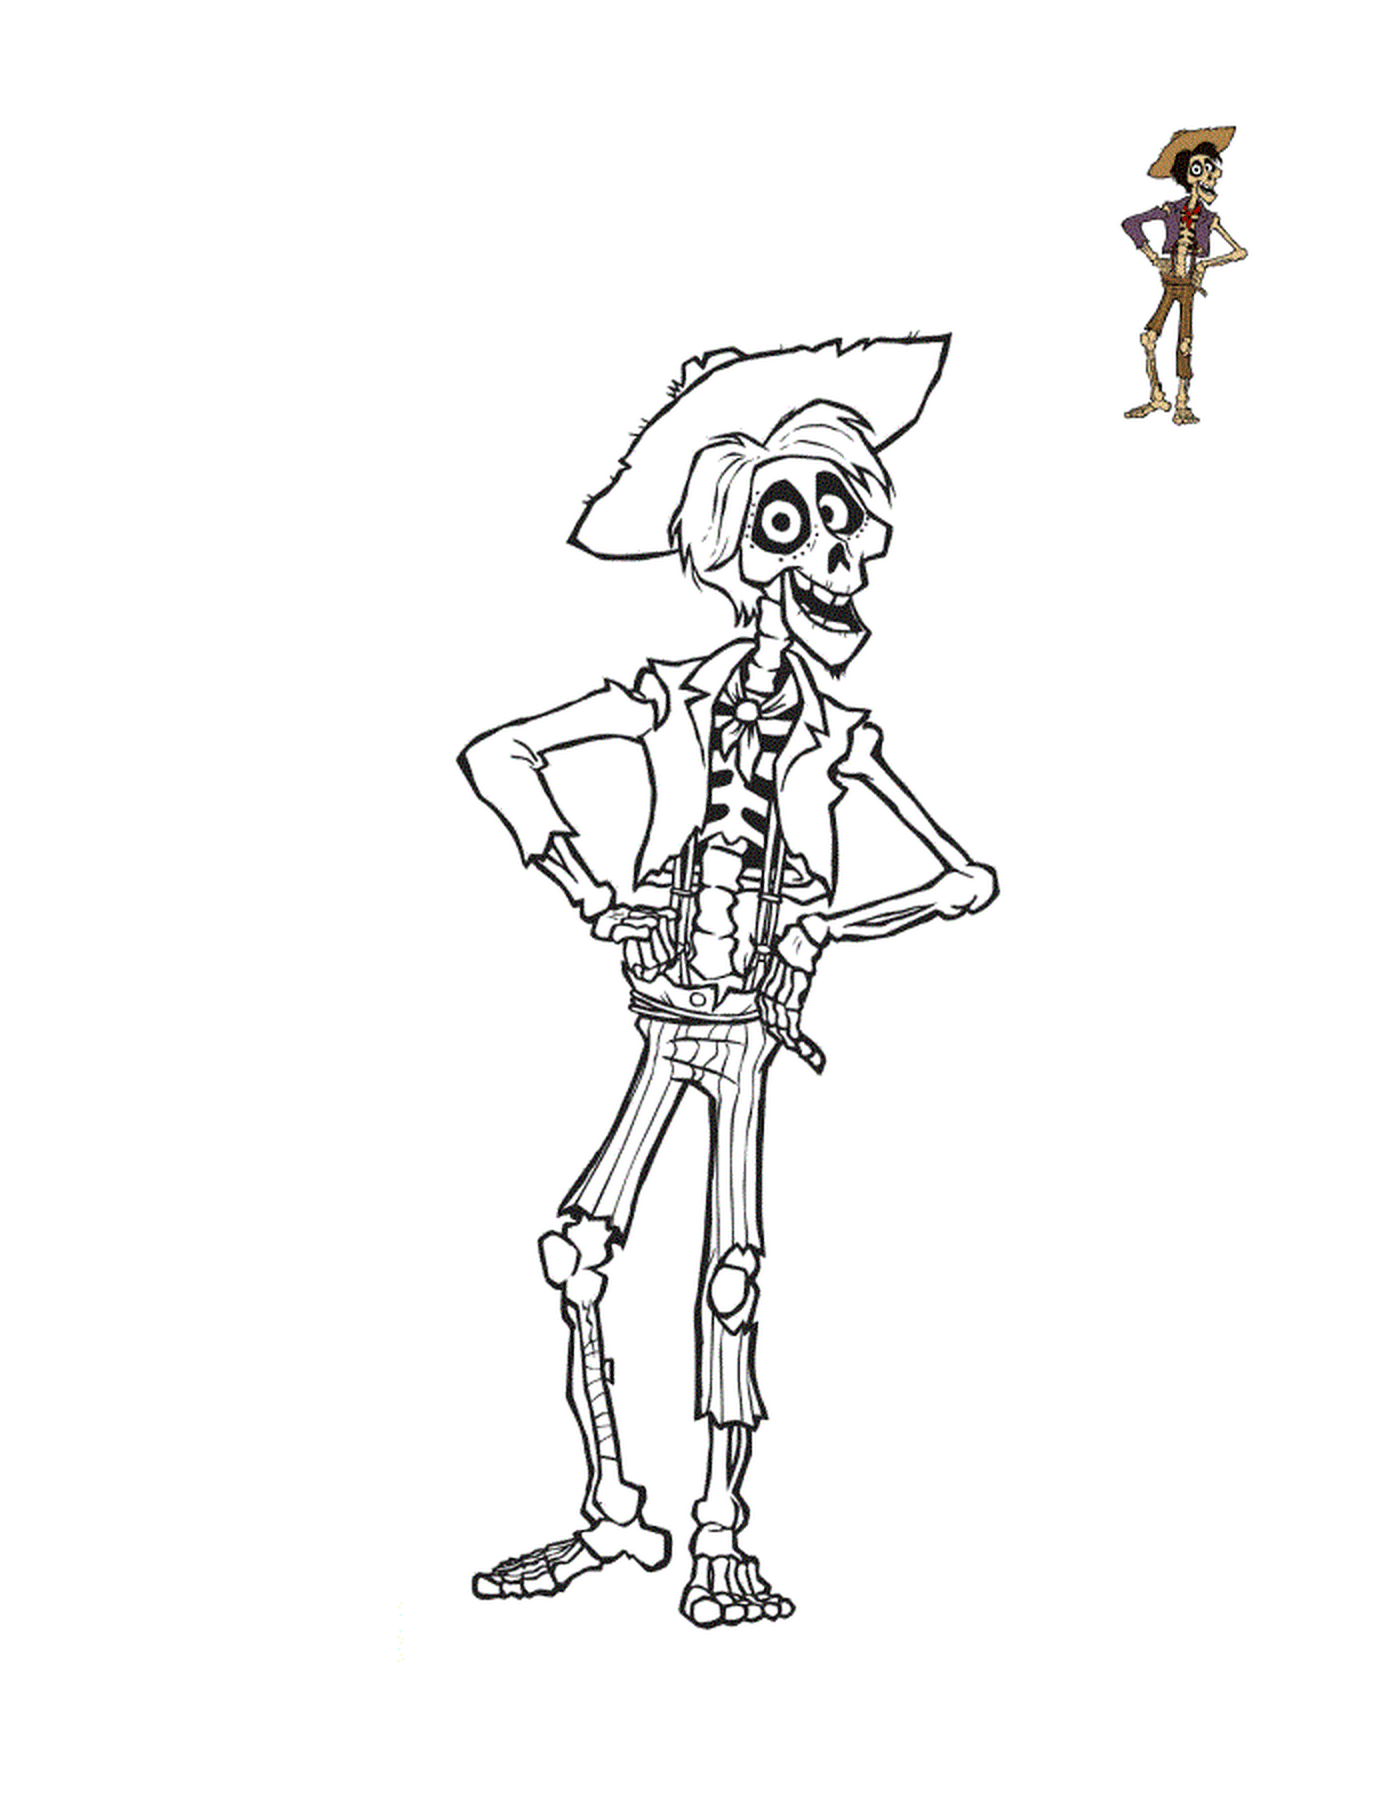  Hector, ein schlankes Skelett mit schwarzem Haar und einer Barbicchette, und magenta Augen 